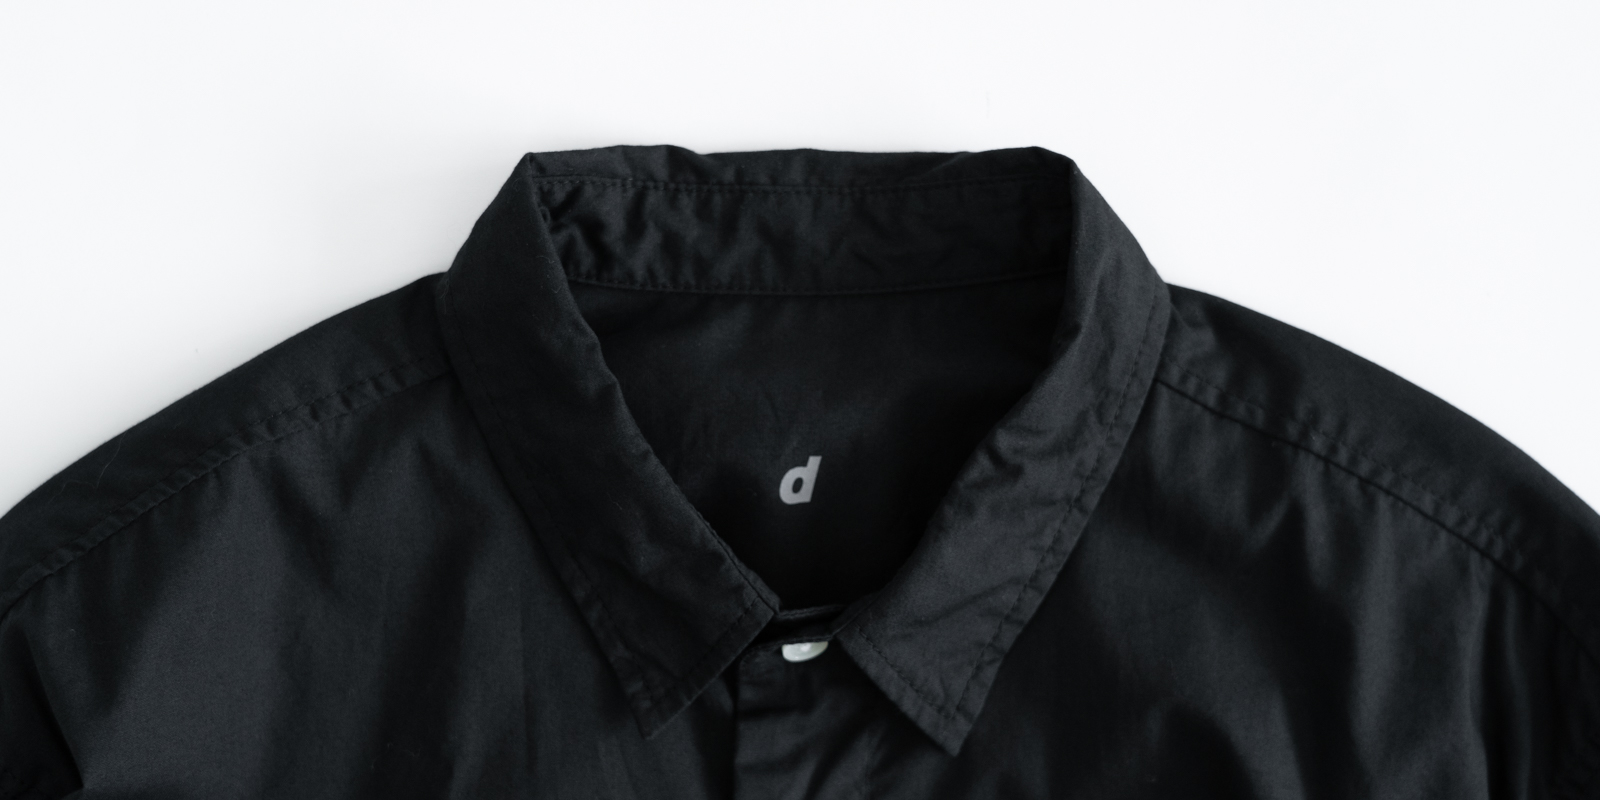 d WEAR レギュラーシャツ・ブラック・S